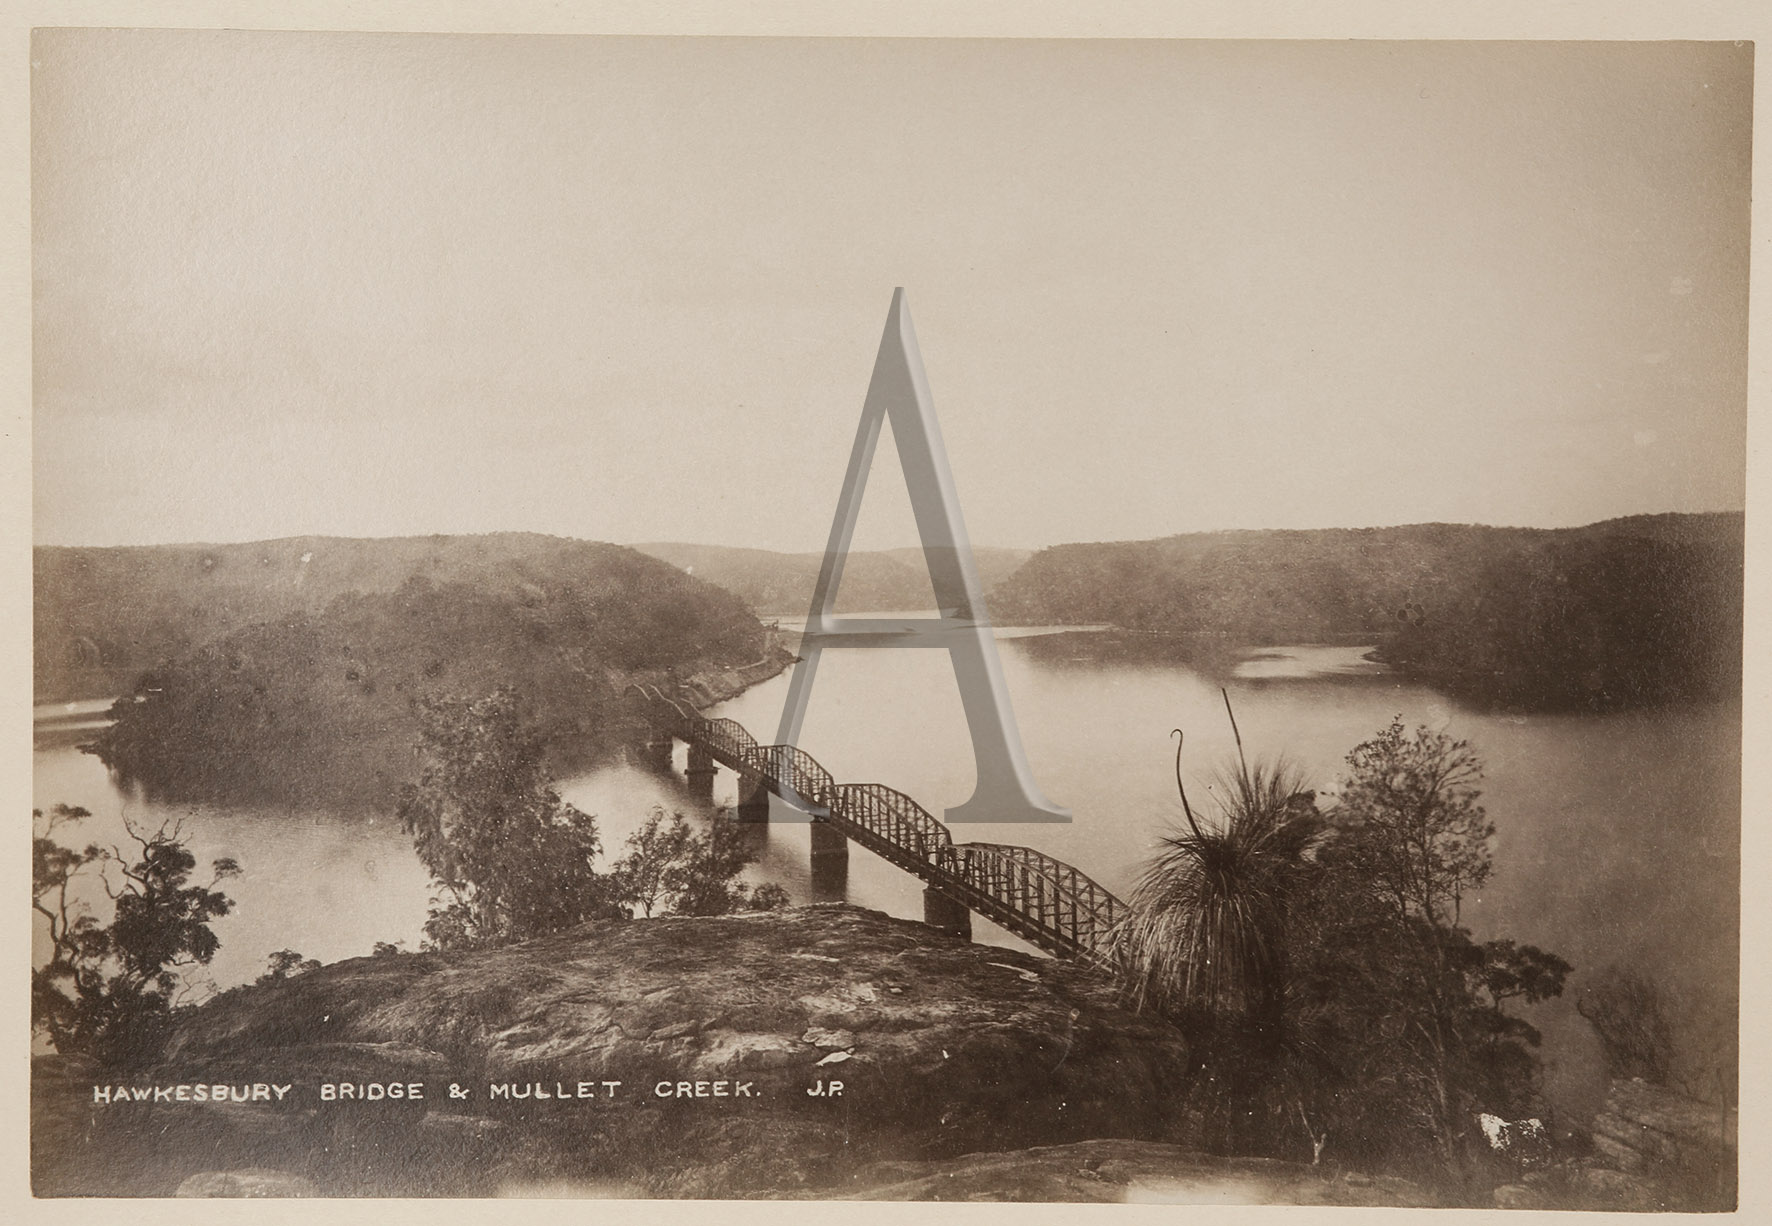 Hawkesbury Bridge & Mullet Creek. - Antique Print from 1885